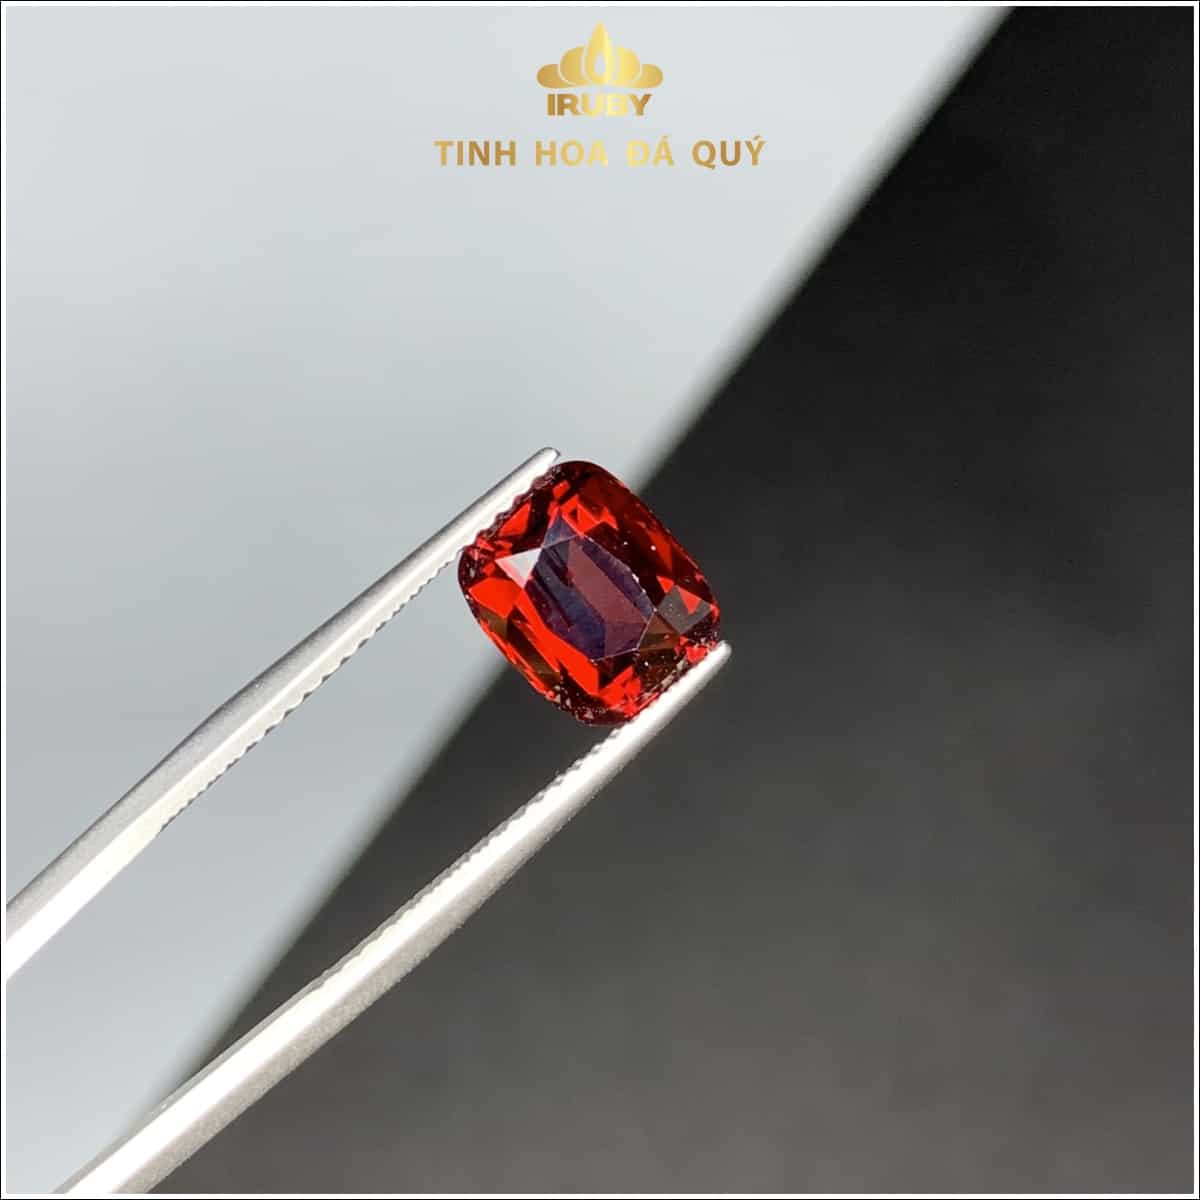 Dải màu của Garnet Pyrope bao gồm từ: đỏ máu đến đỏ đen, đỏ, đỏ cam, hồng, một số loại có màu rất sẫm